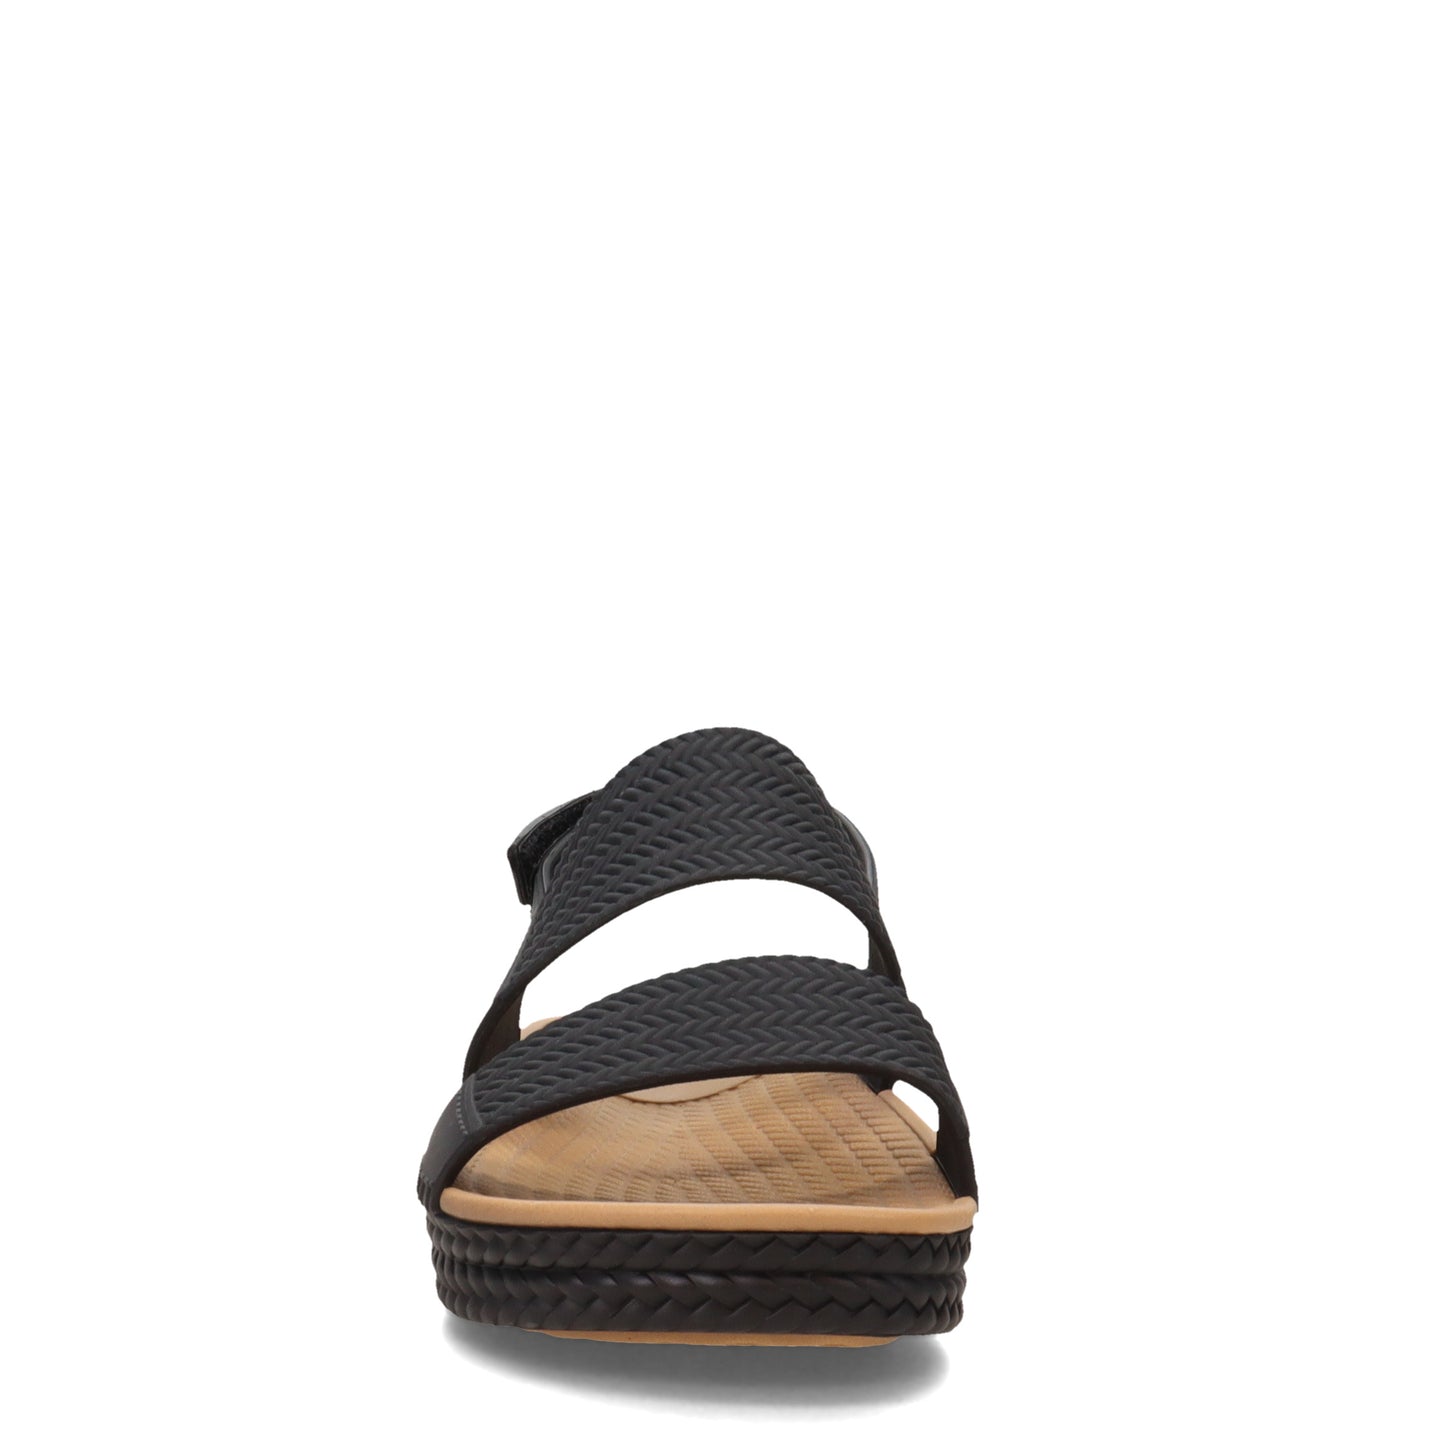 Peltz Shoes  Women's Reef Water Vista Sandal Black/Tan CI8573